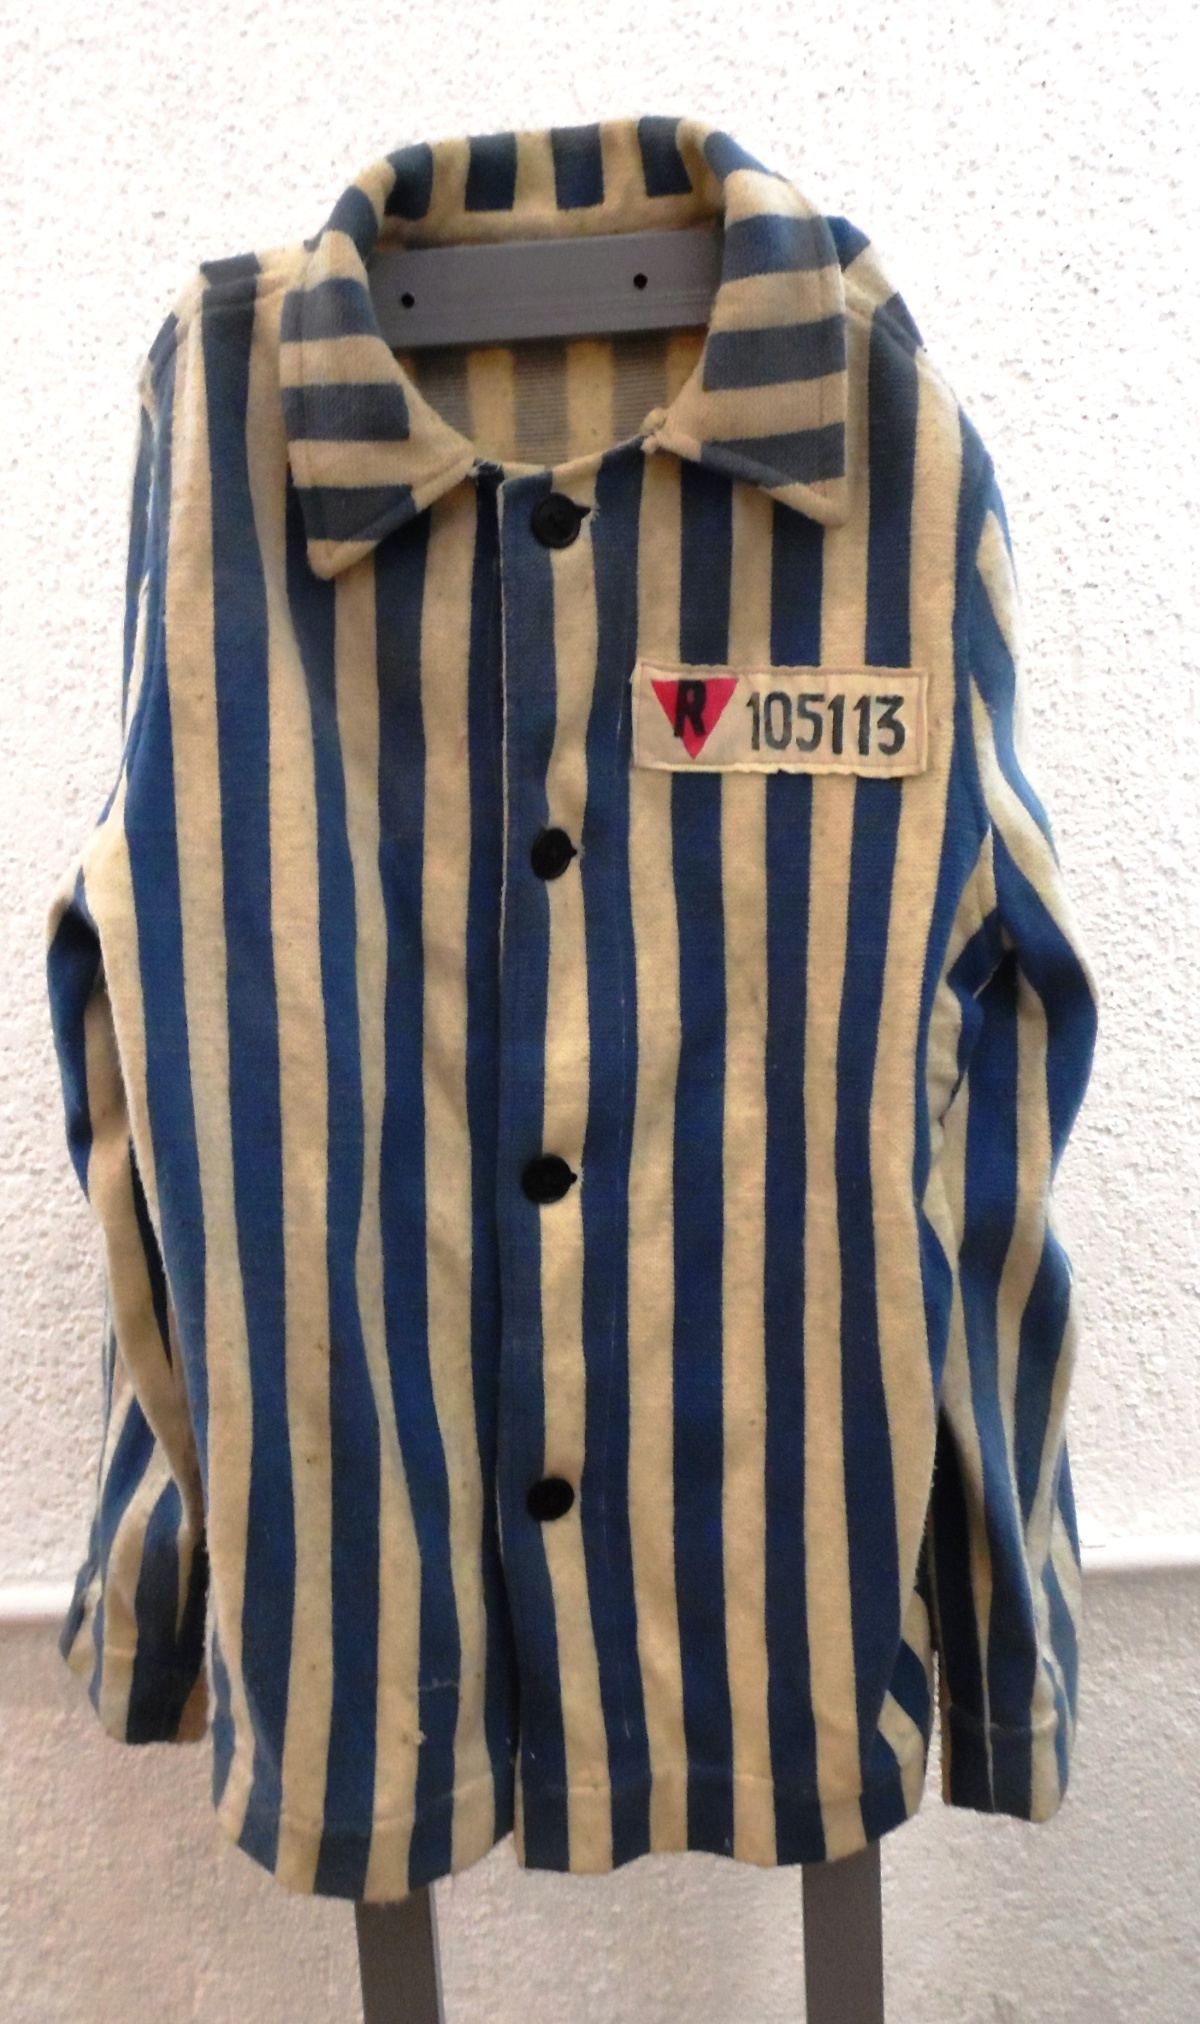 Куртка узника концентрационного лагеря. 1941-1945 гг.